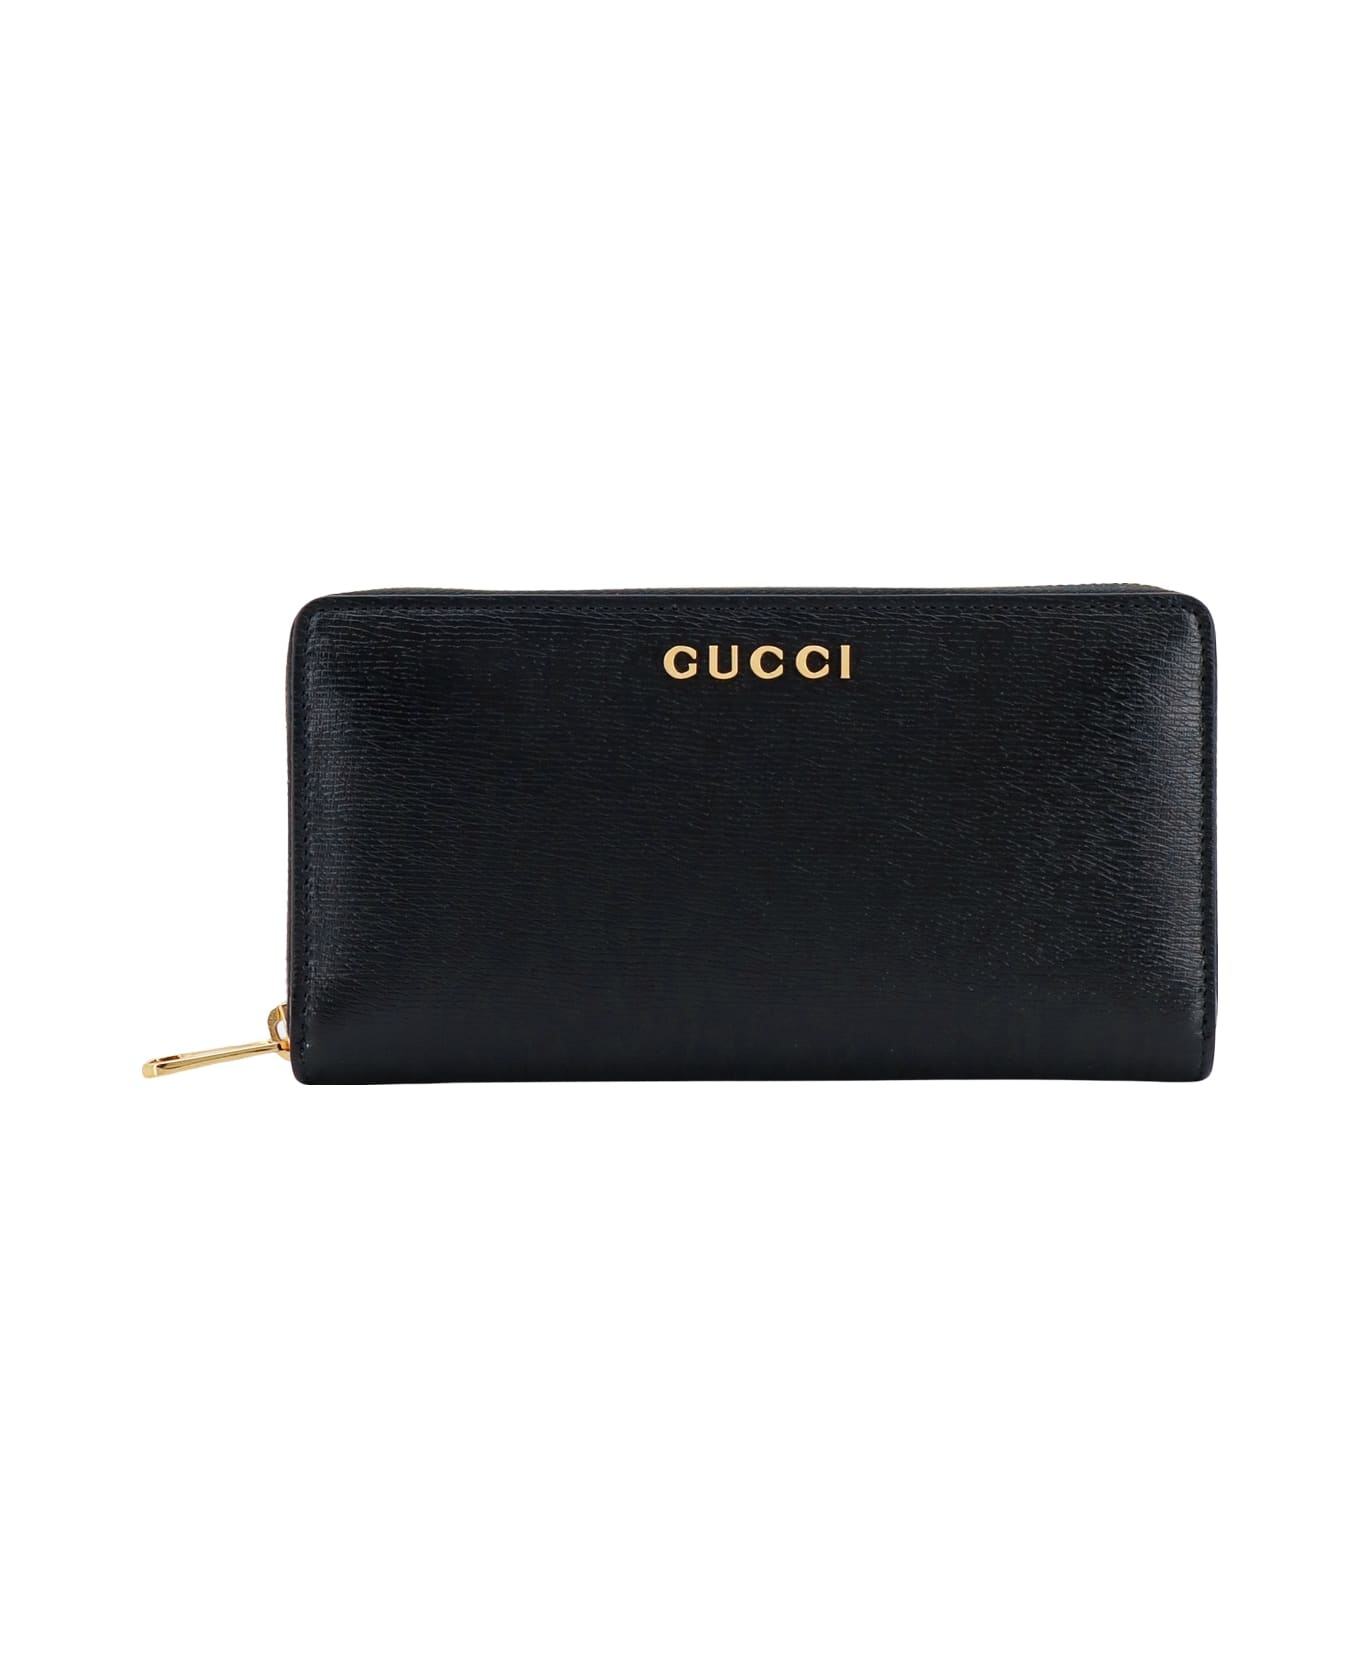 Gucci Wallet - Nero 財布